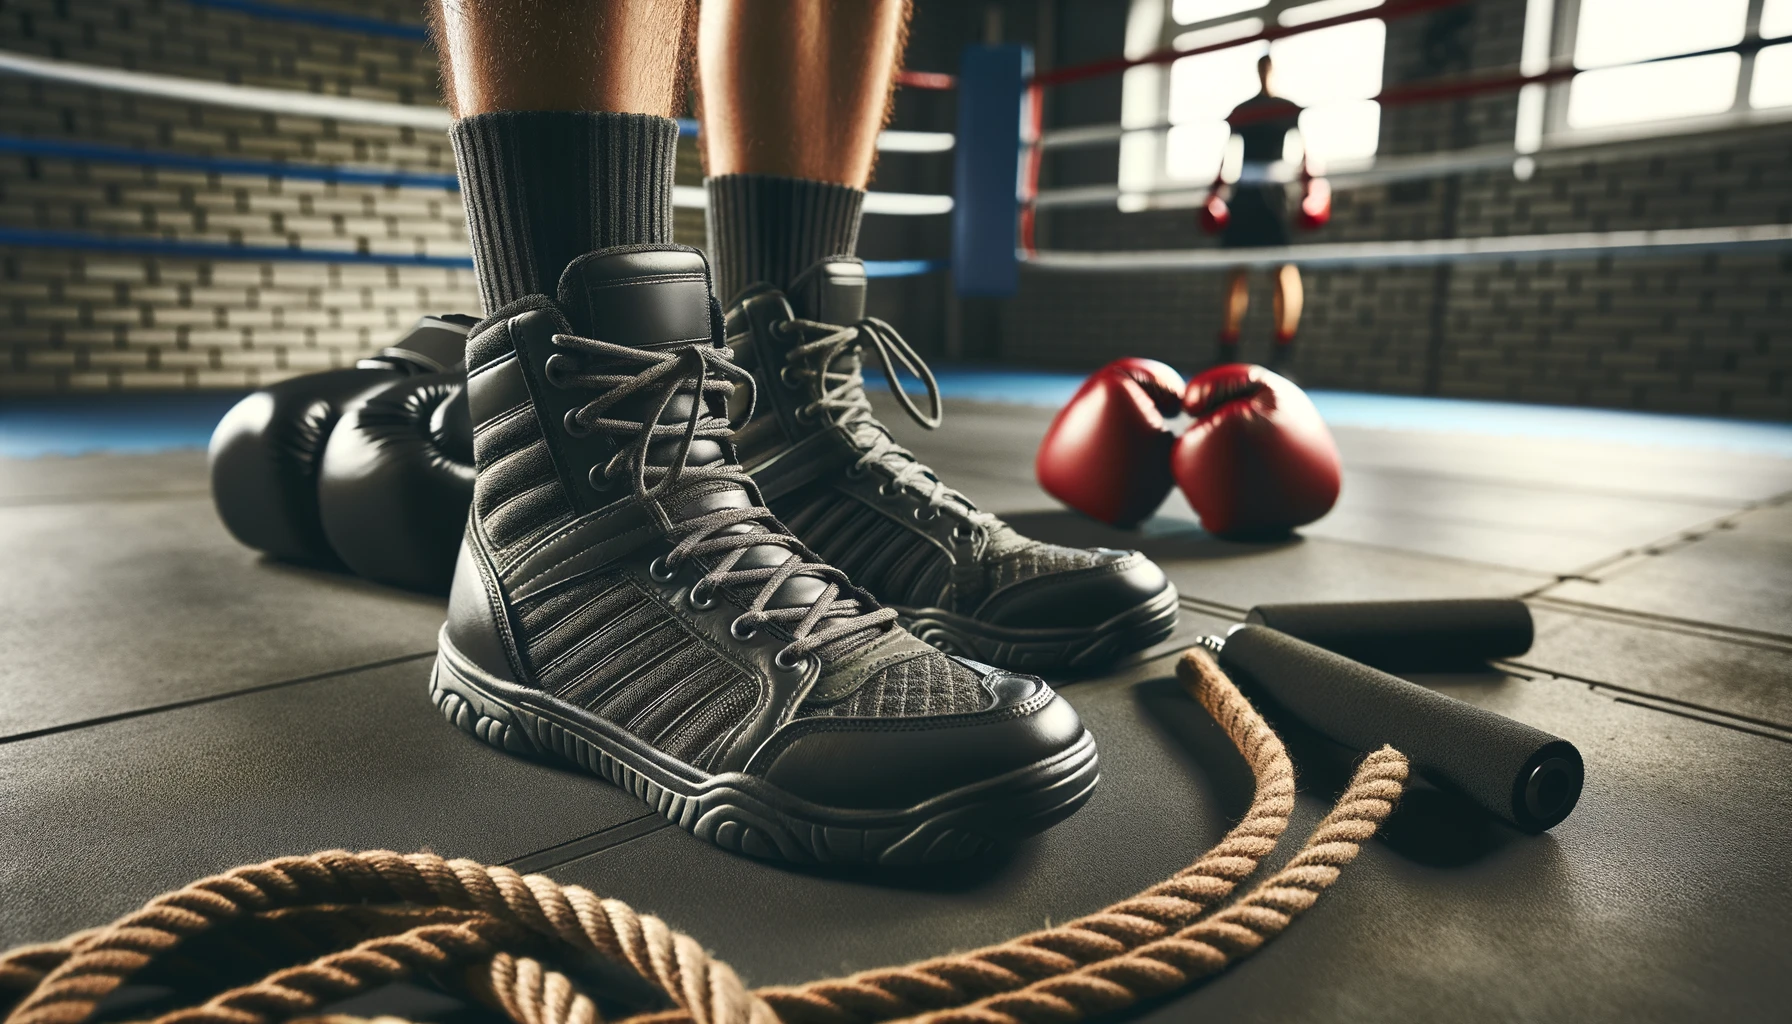 Foto von einem Paar professioneller Boxschuhe, die auf dem Boden eines Fitnessstudios stehen, umgeben von Boxausrüstung wie Handschuhen und Springseilen.